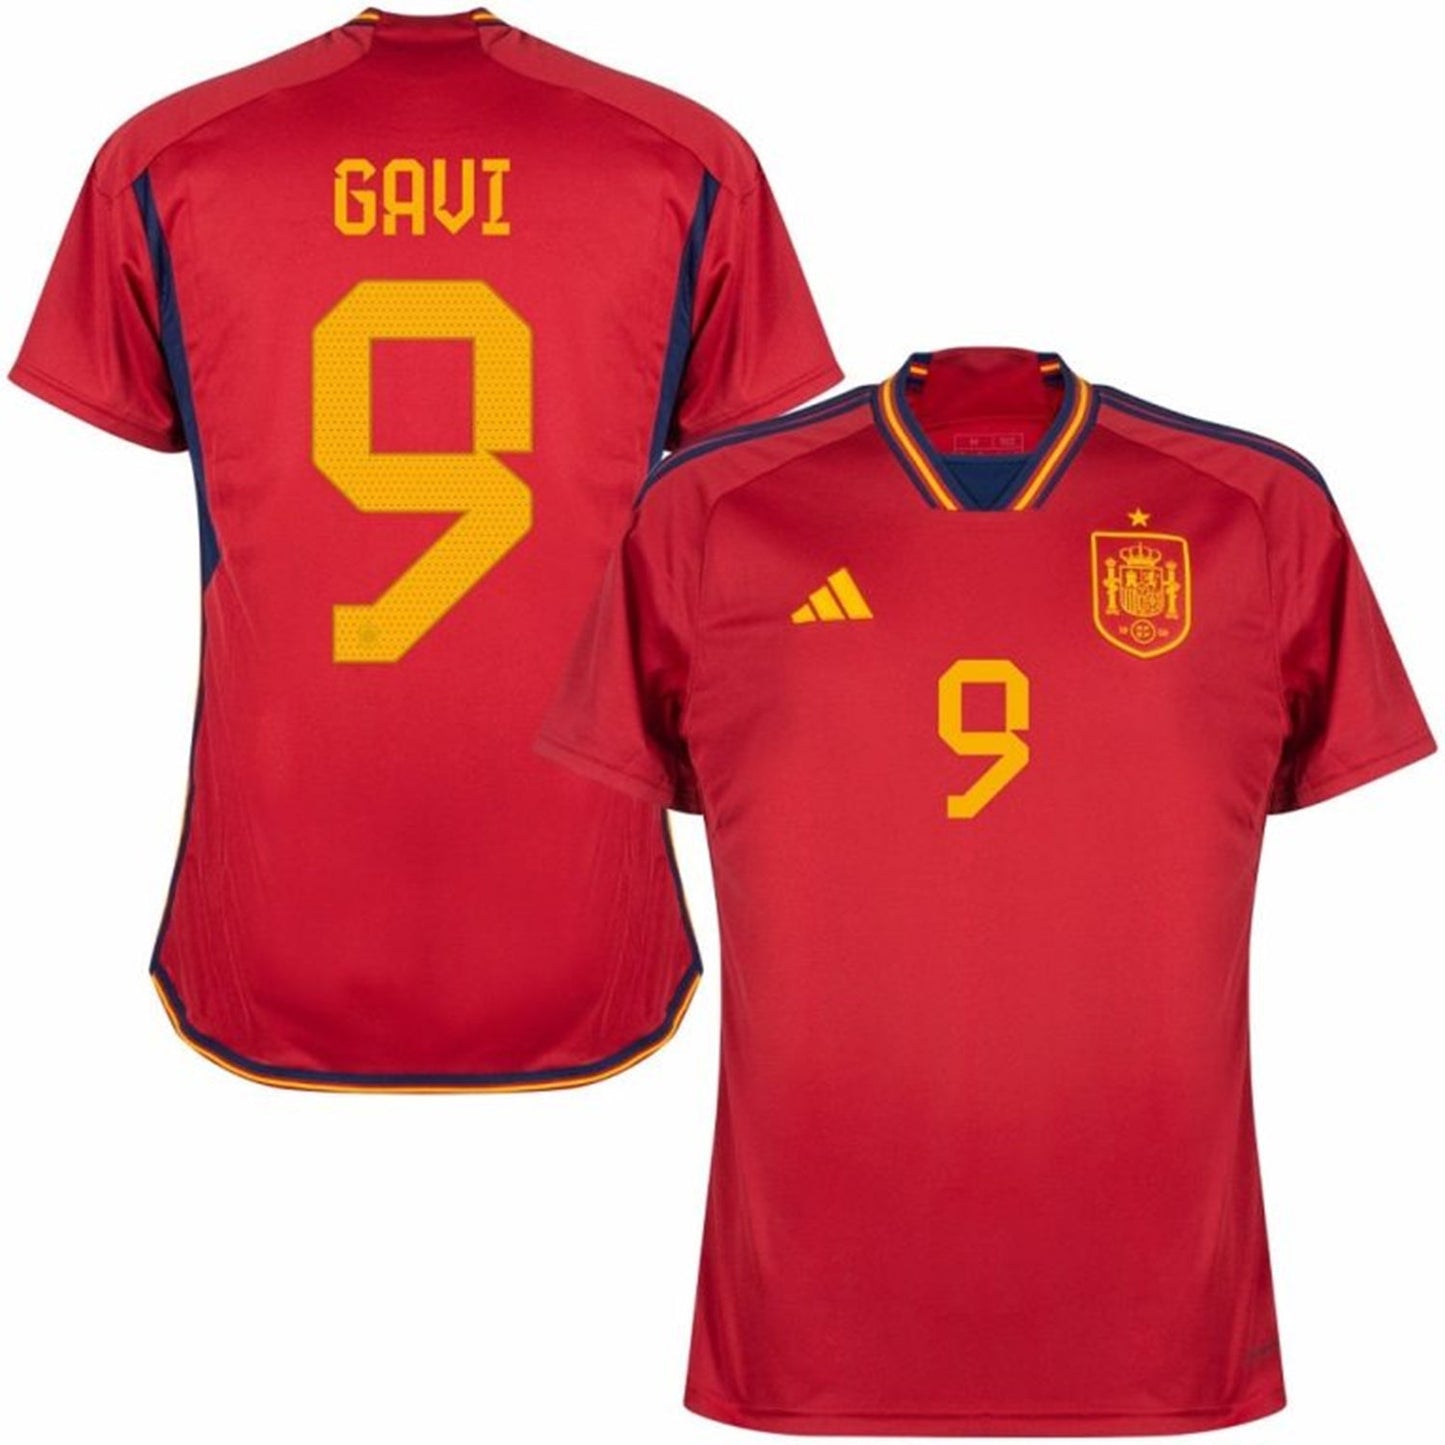 Gavi Spain 9 FIFA World Cup Jersey